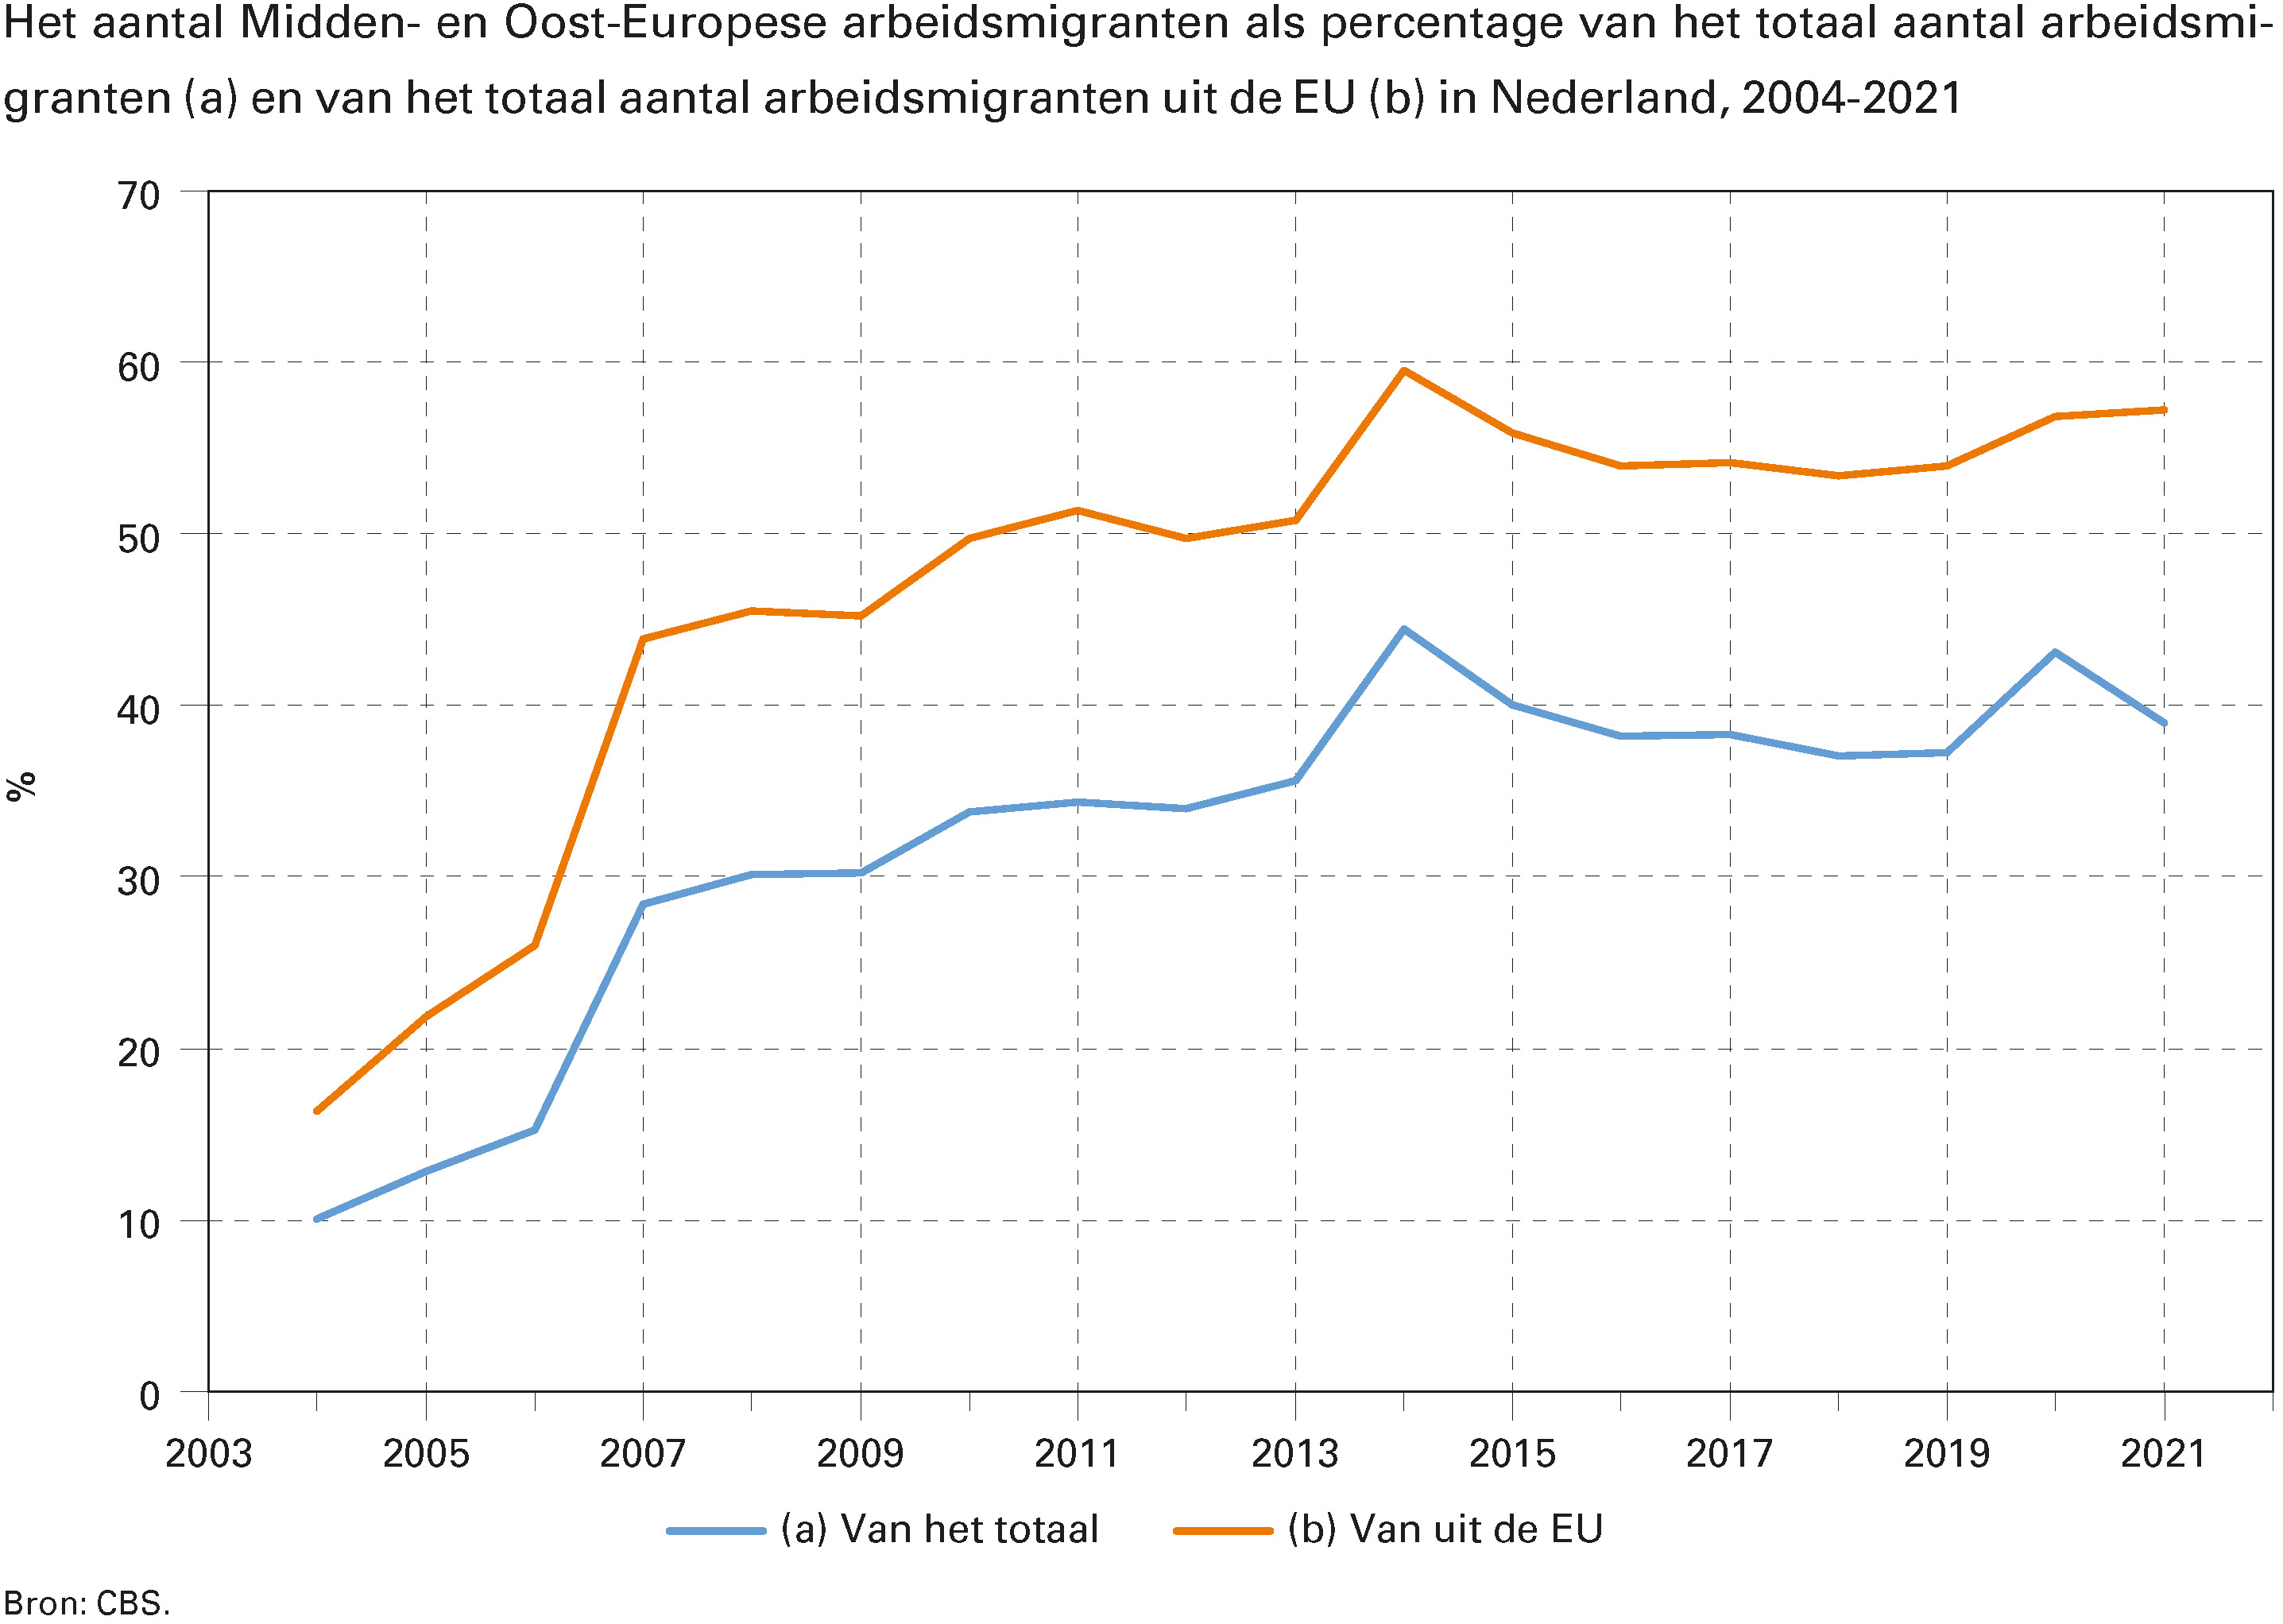 Het aantal Midden- en Oost-Europese arbeidsmigranten als percentage van het totaal aantal arbeidsmigranten (a) en van het totaal aantal arbeidsmigranten uit de EU (b) in Nederland, 2004-2021